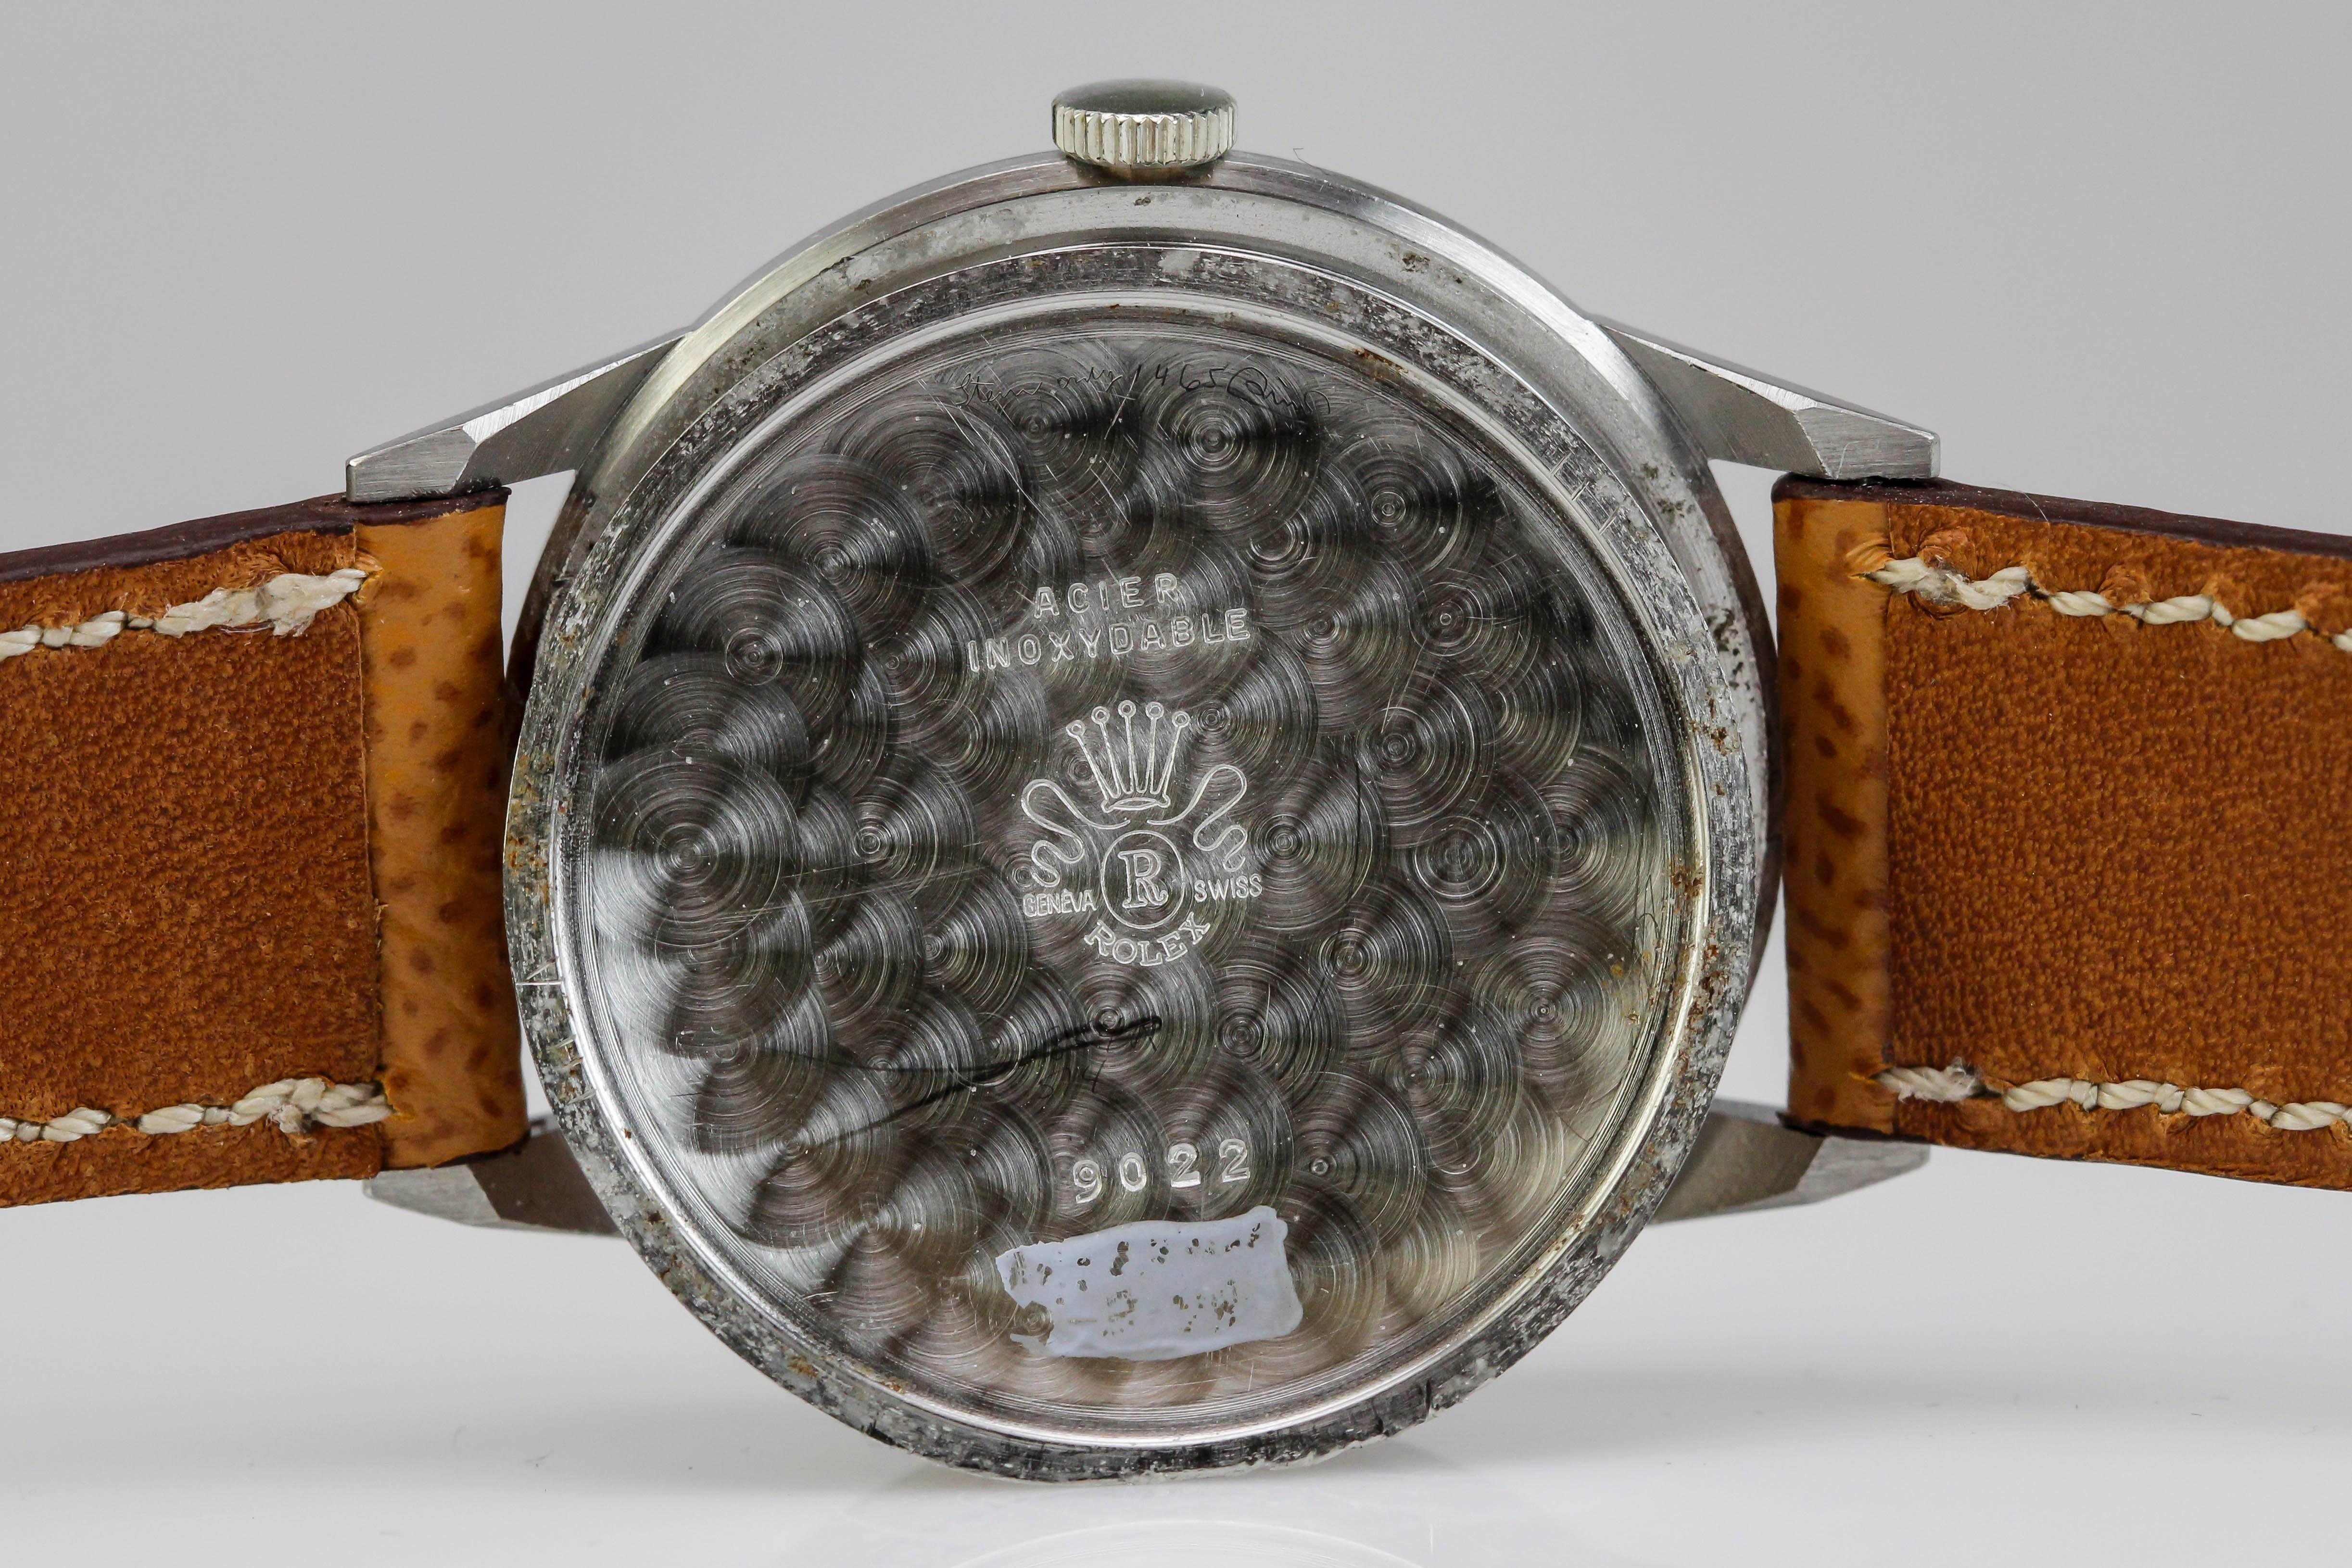 Men's Rolex Stainless Steel Precision Wristwatch Ref 9022 